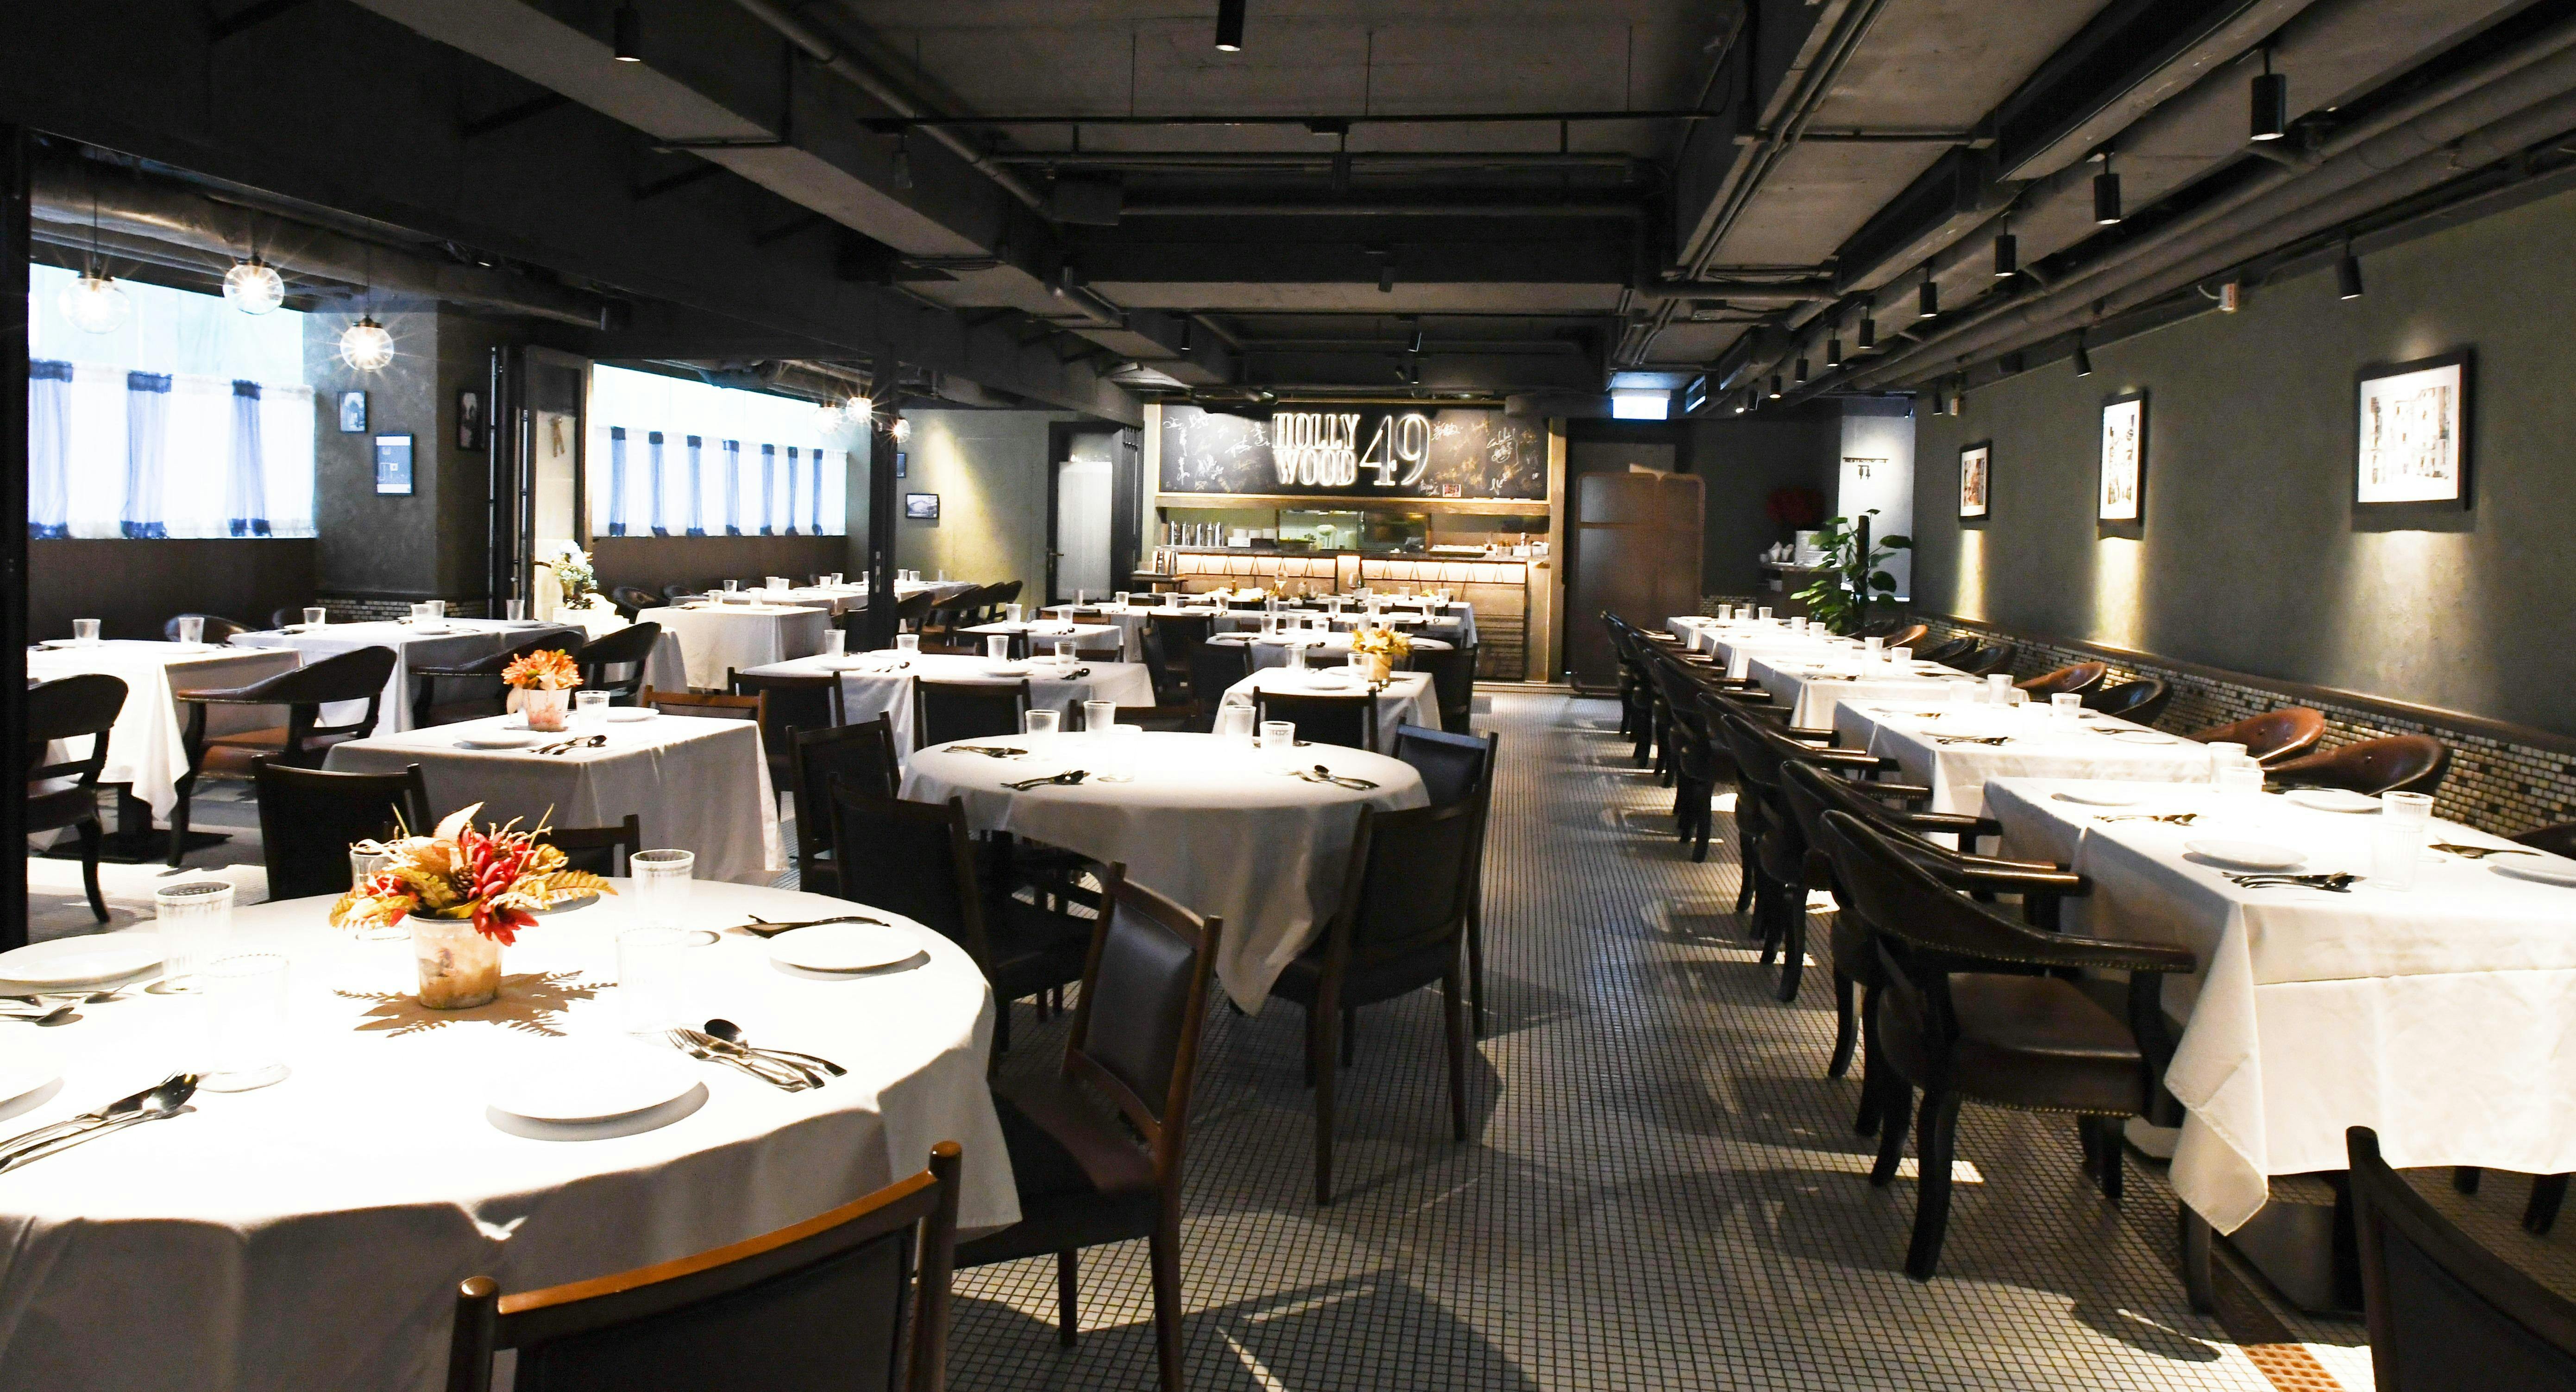 Photo of restaurant Hollywood 49 in Wan Chai, Hong Kong